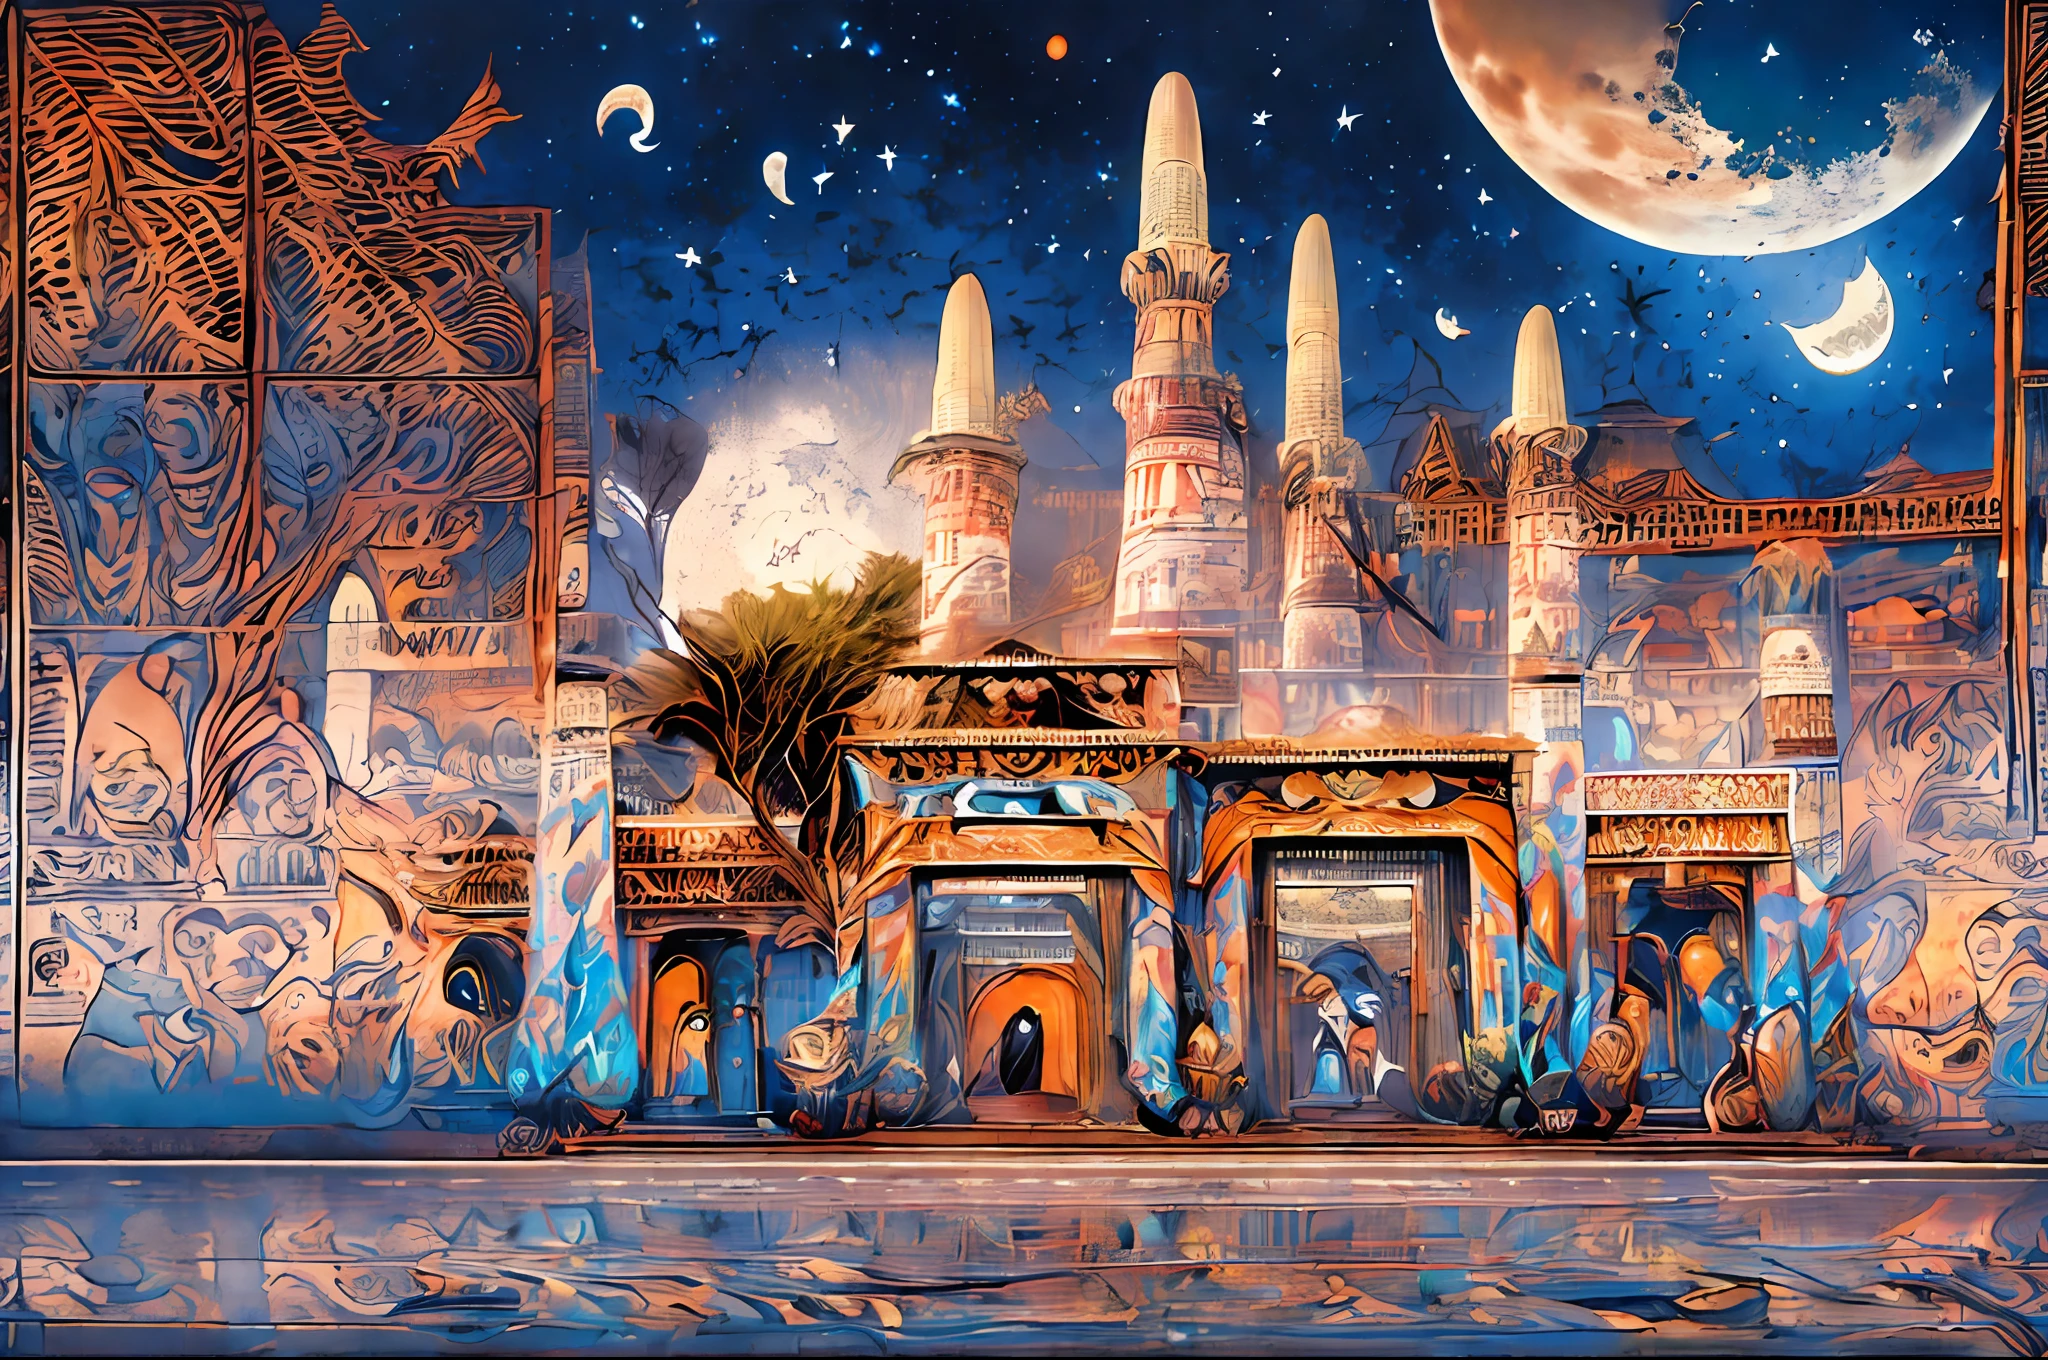 在一座有月亮的未來阿拉伯城市中央有一座大型未來主義傑作阿拉伯宮殿, 在奇幻科幻城市, 科幻幻想桌布, 傑作《古蘭經》藝術城市景觀, 史詩古蘭經藝術科幻插畫, 巨大的未來派古蘭經藝術城, 奇幻科幻, 科幻奇幻桌面壁紙, 古蘭經藝術城市背景, in front of a 幻想城, 幻想城, 在外星球的一座城堡裡，欣賞古蘭經藝術傑作